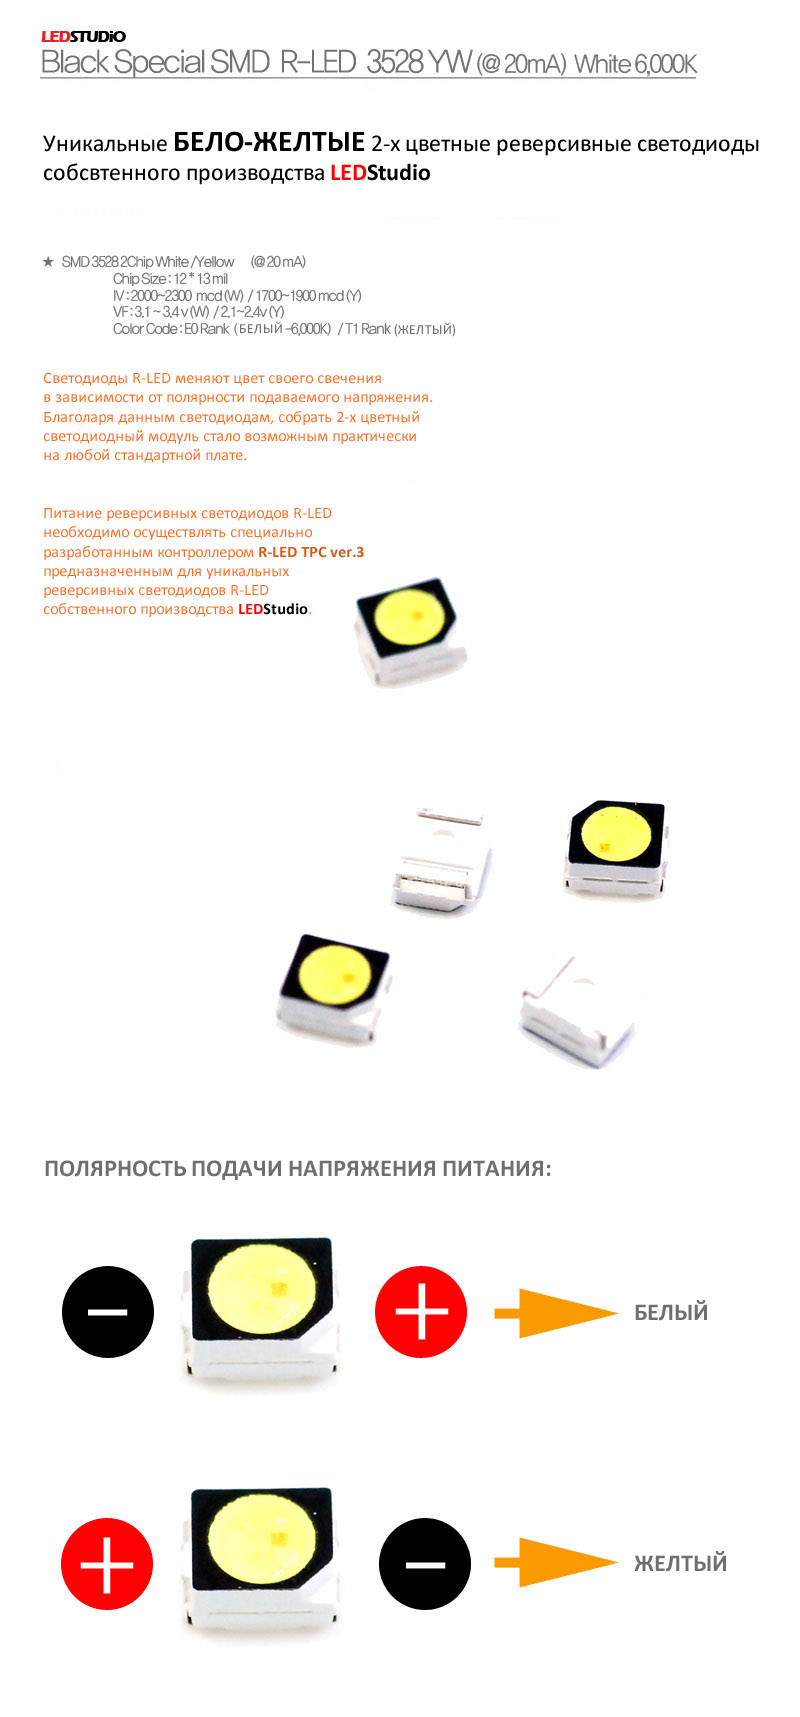 Светодиод 3528 реверсивный R-LED YW желто-белый (LEDSTUDIO)